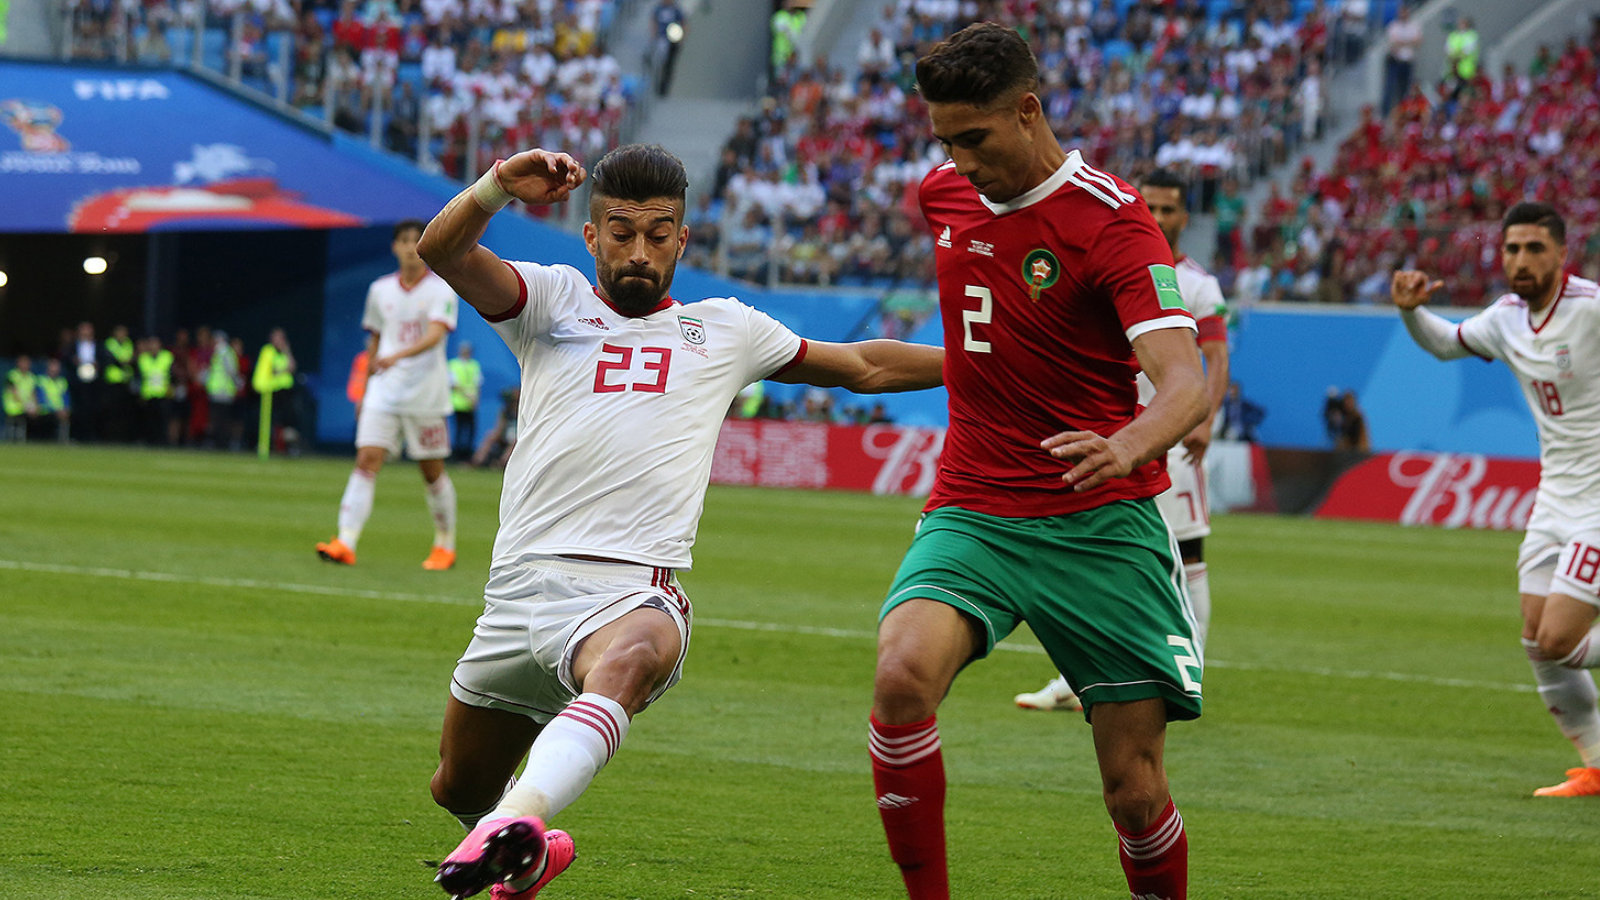 susunan pemain tim nasional sepak bola maroko vs tim nasional sepak bola prancis